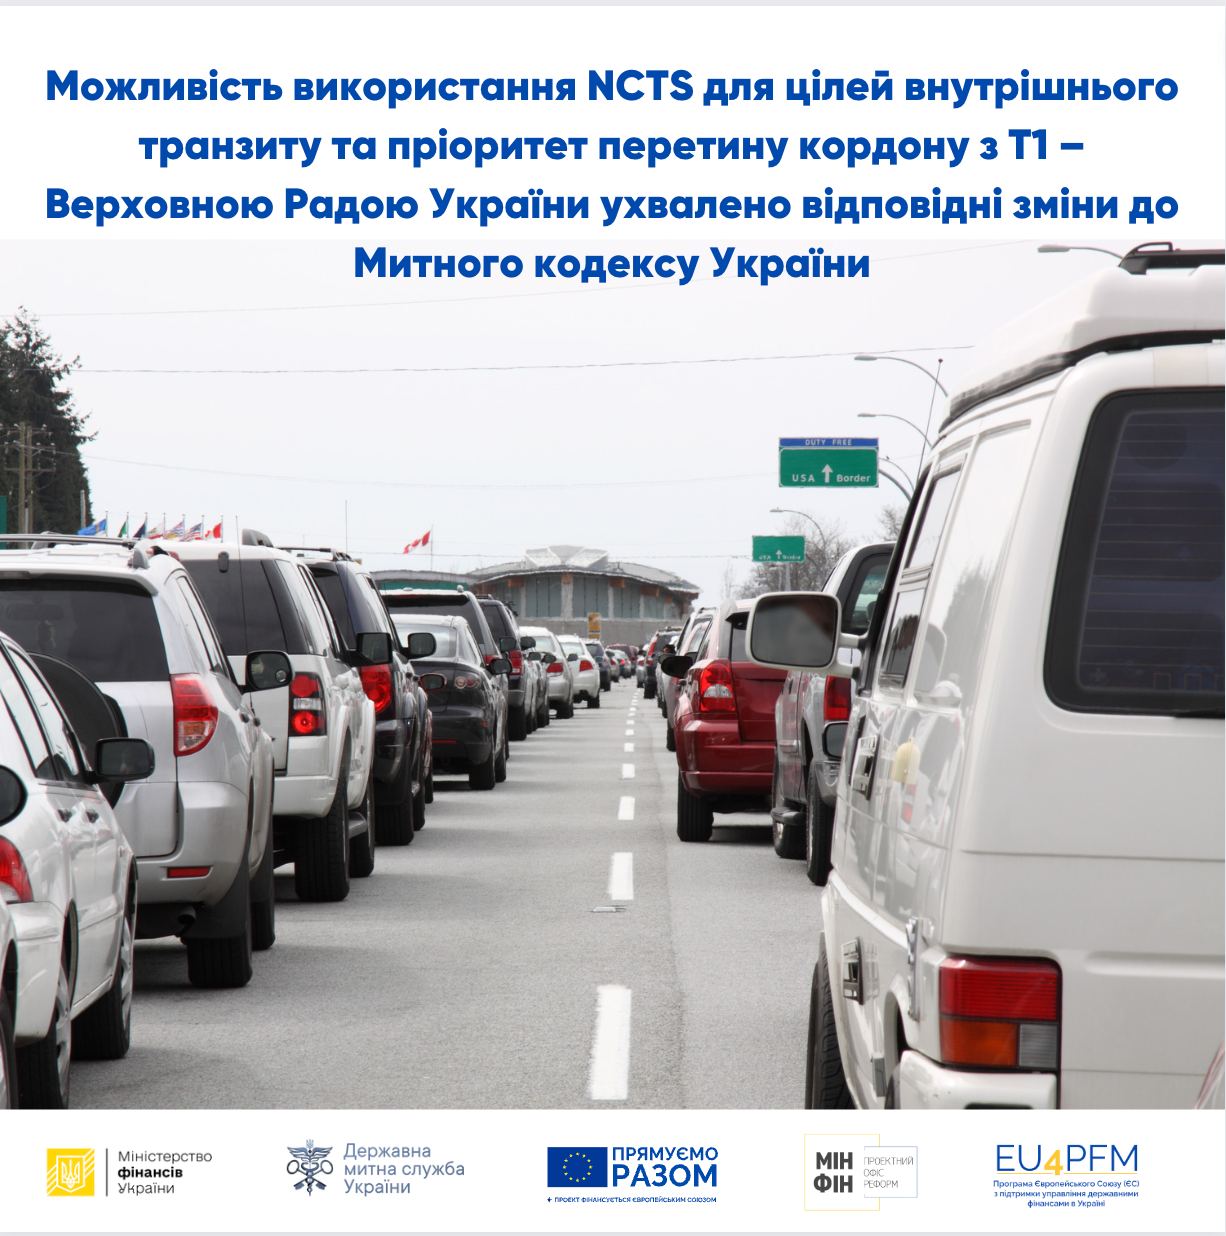 Можливість використання NCTS для цілей внутрішнього транзиту та пріоритет перетину кордону з Т1 – Верховною Радою України ухвалено відповідні зміни до Митного кодексу України